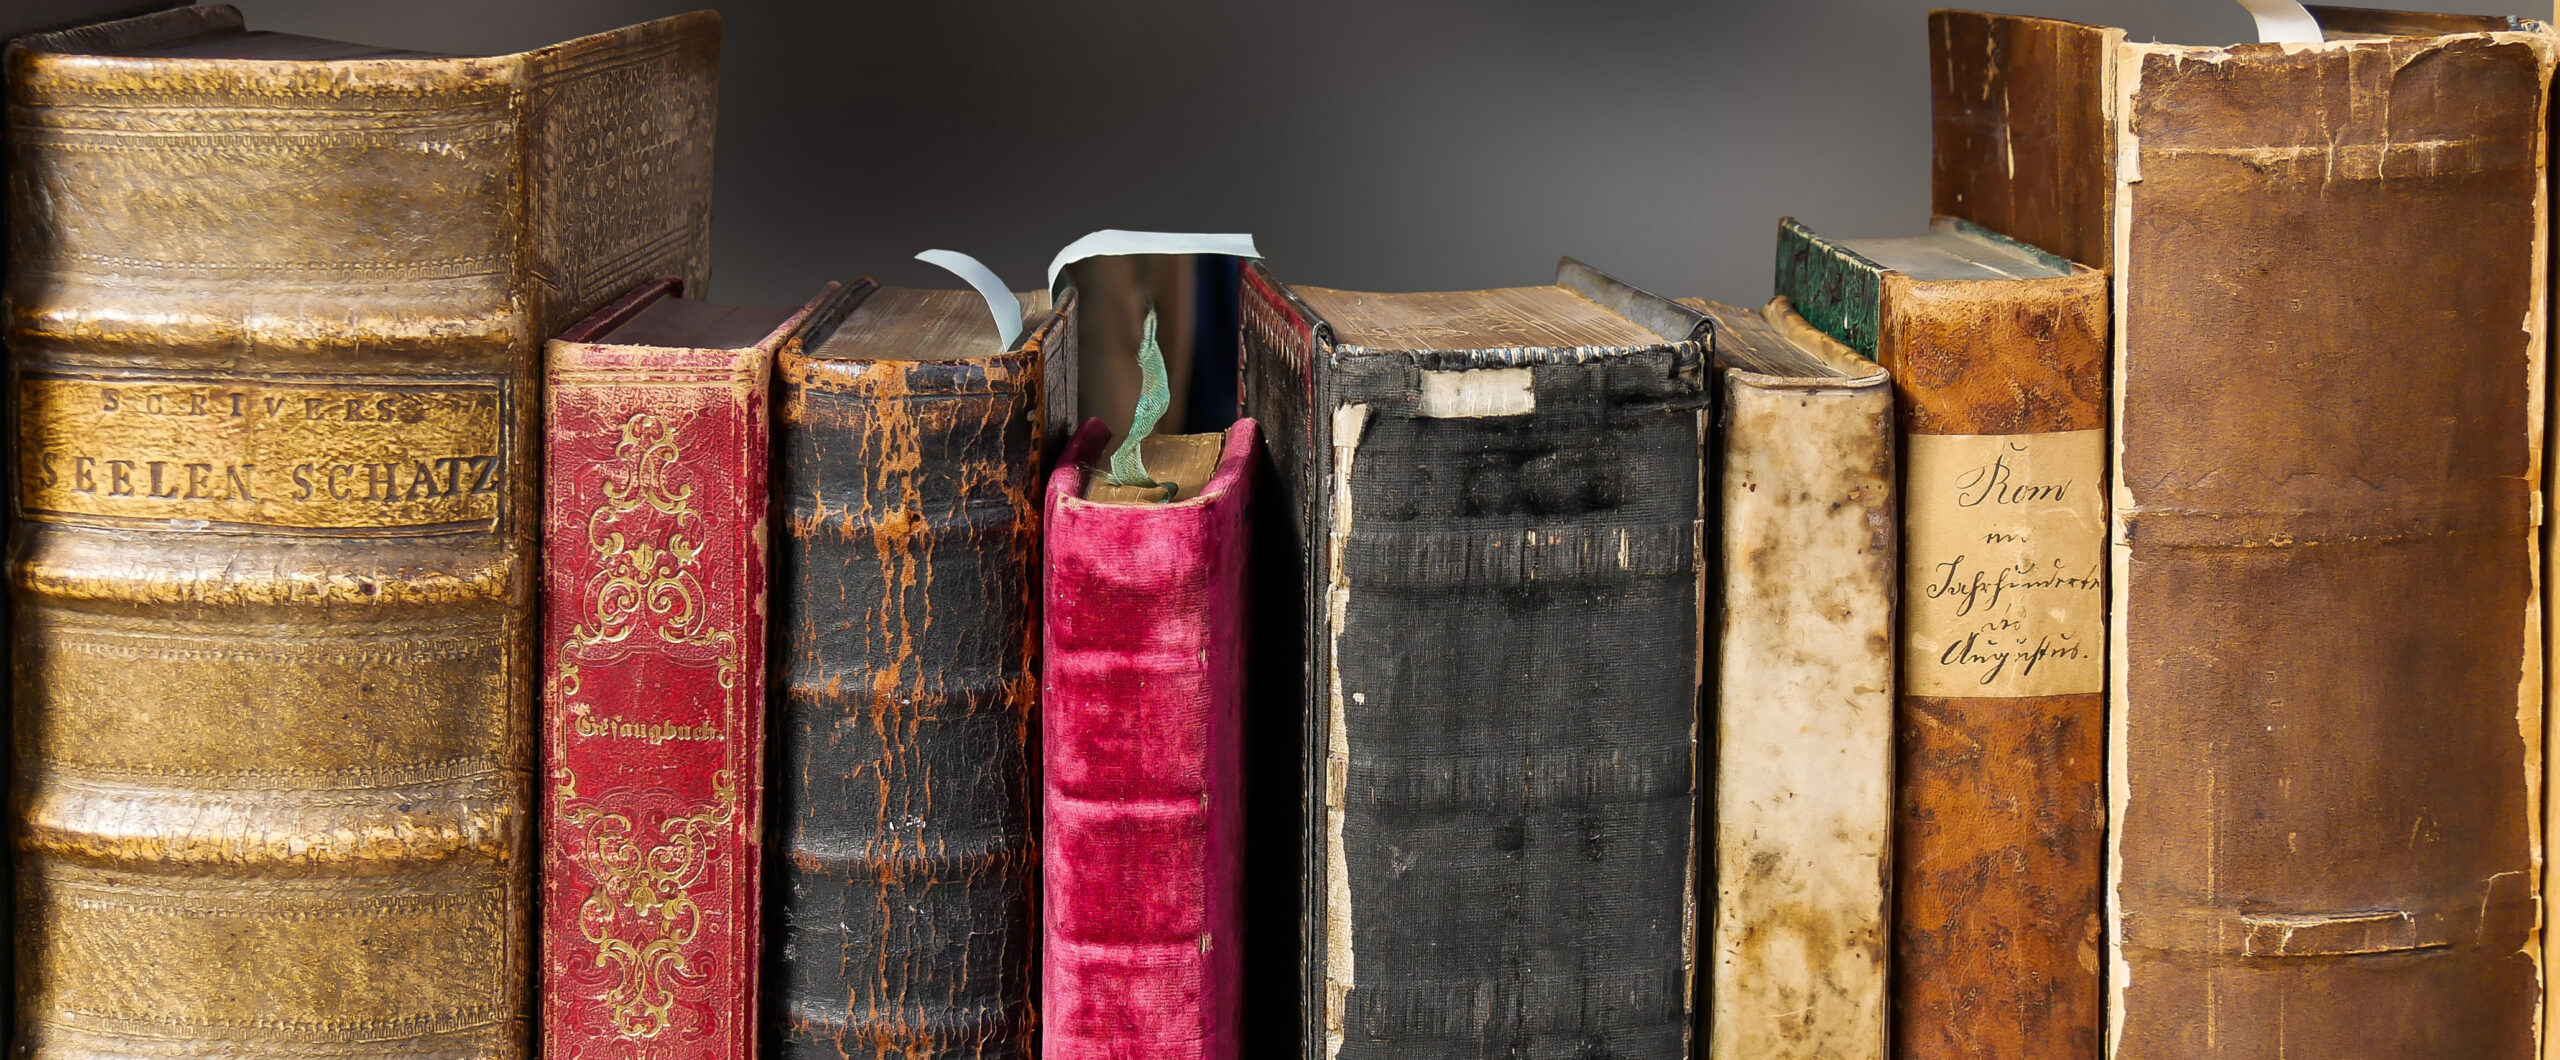 Alte Bücher mit verschlissenen Buchrücken stehen im Regal